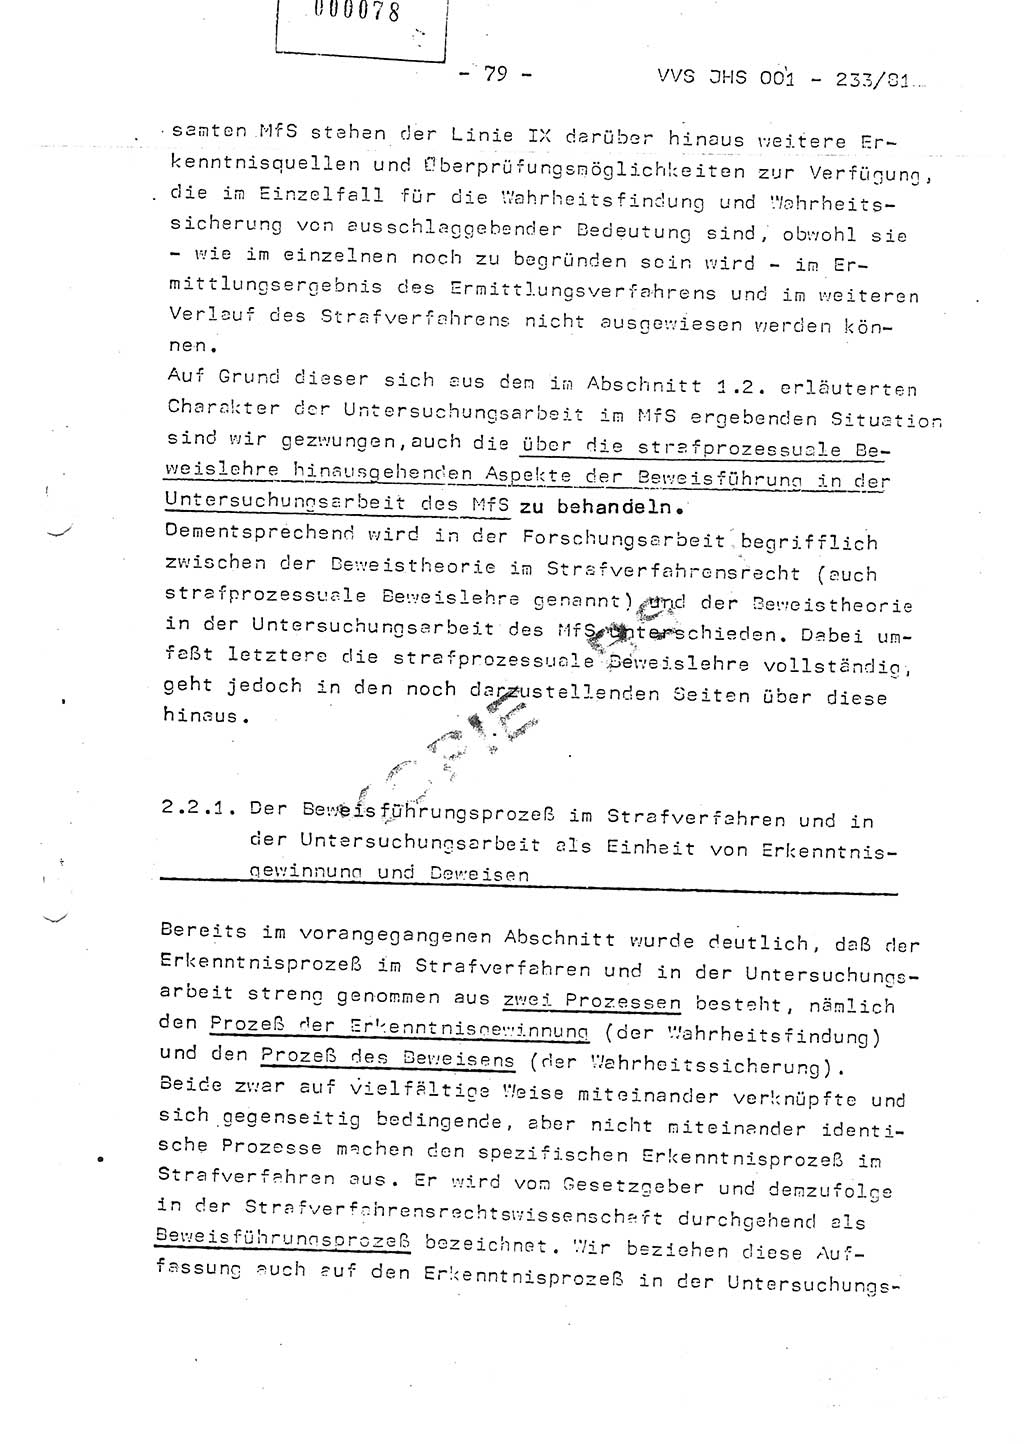 Dissertation Oberstleutnant Horst Zank (JHS), Oberstleutnant Dr. Karl-Heinz Knoblauch (JHS), Oberstleutnant Gustav-Adolf Kowalewski (HA Ⅸ), Oberstleutnant Wolfgang Plötner (HA Ⅸ), Ministerium für Staatssicherheit (MfS) [Deutsche Demokratische Republik (DDR)], Juristische Hochschule (JHS), Vertrauliche Verschlußsache (VVS) o001-233/81, Potsdam 1981, Blatt 79 (Diss. MfS DDR JHS VVS o001-233/81 1981, Bl. 79)